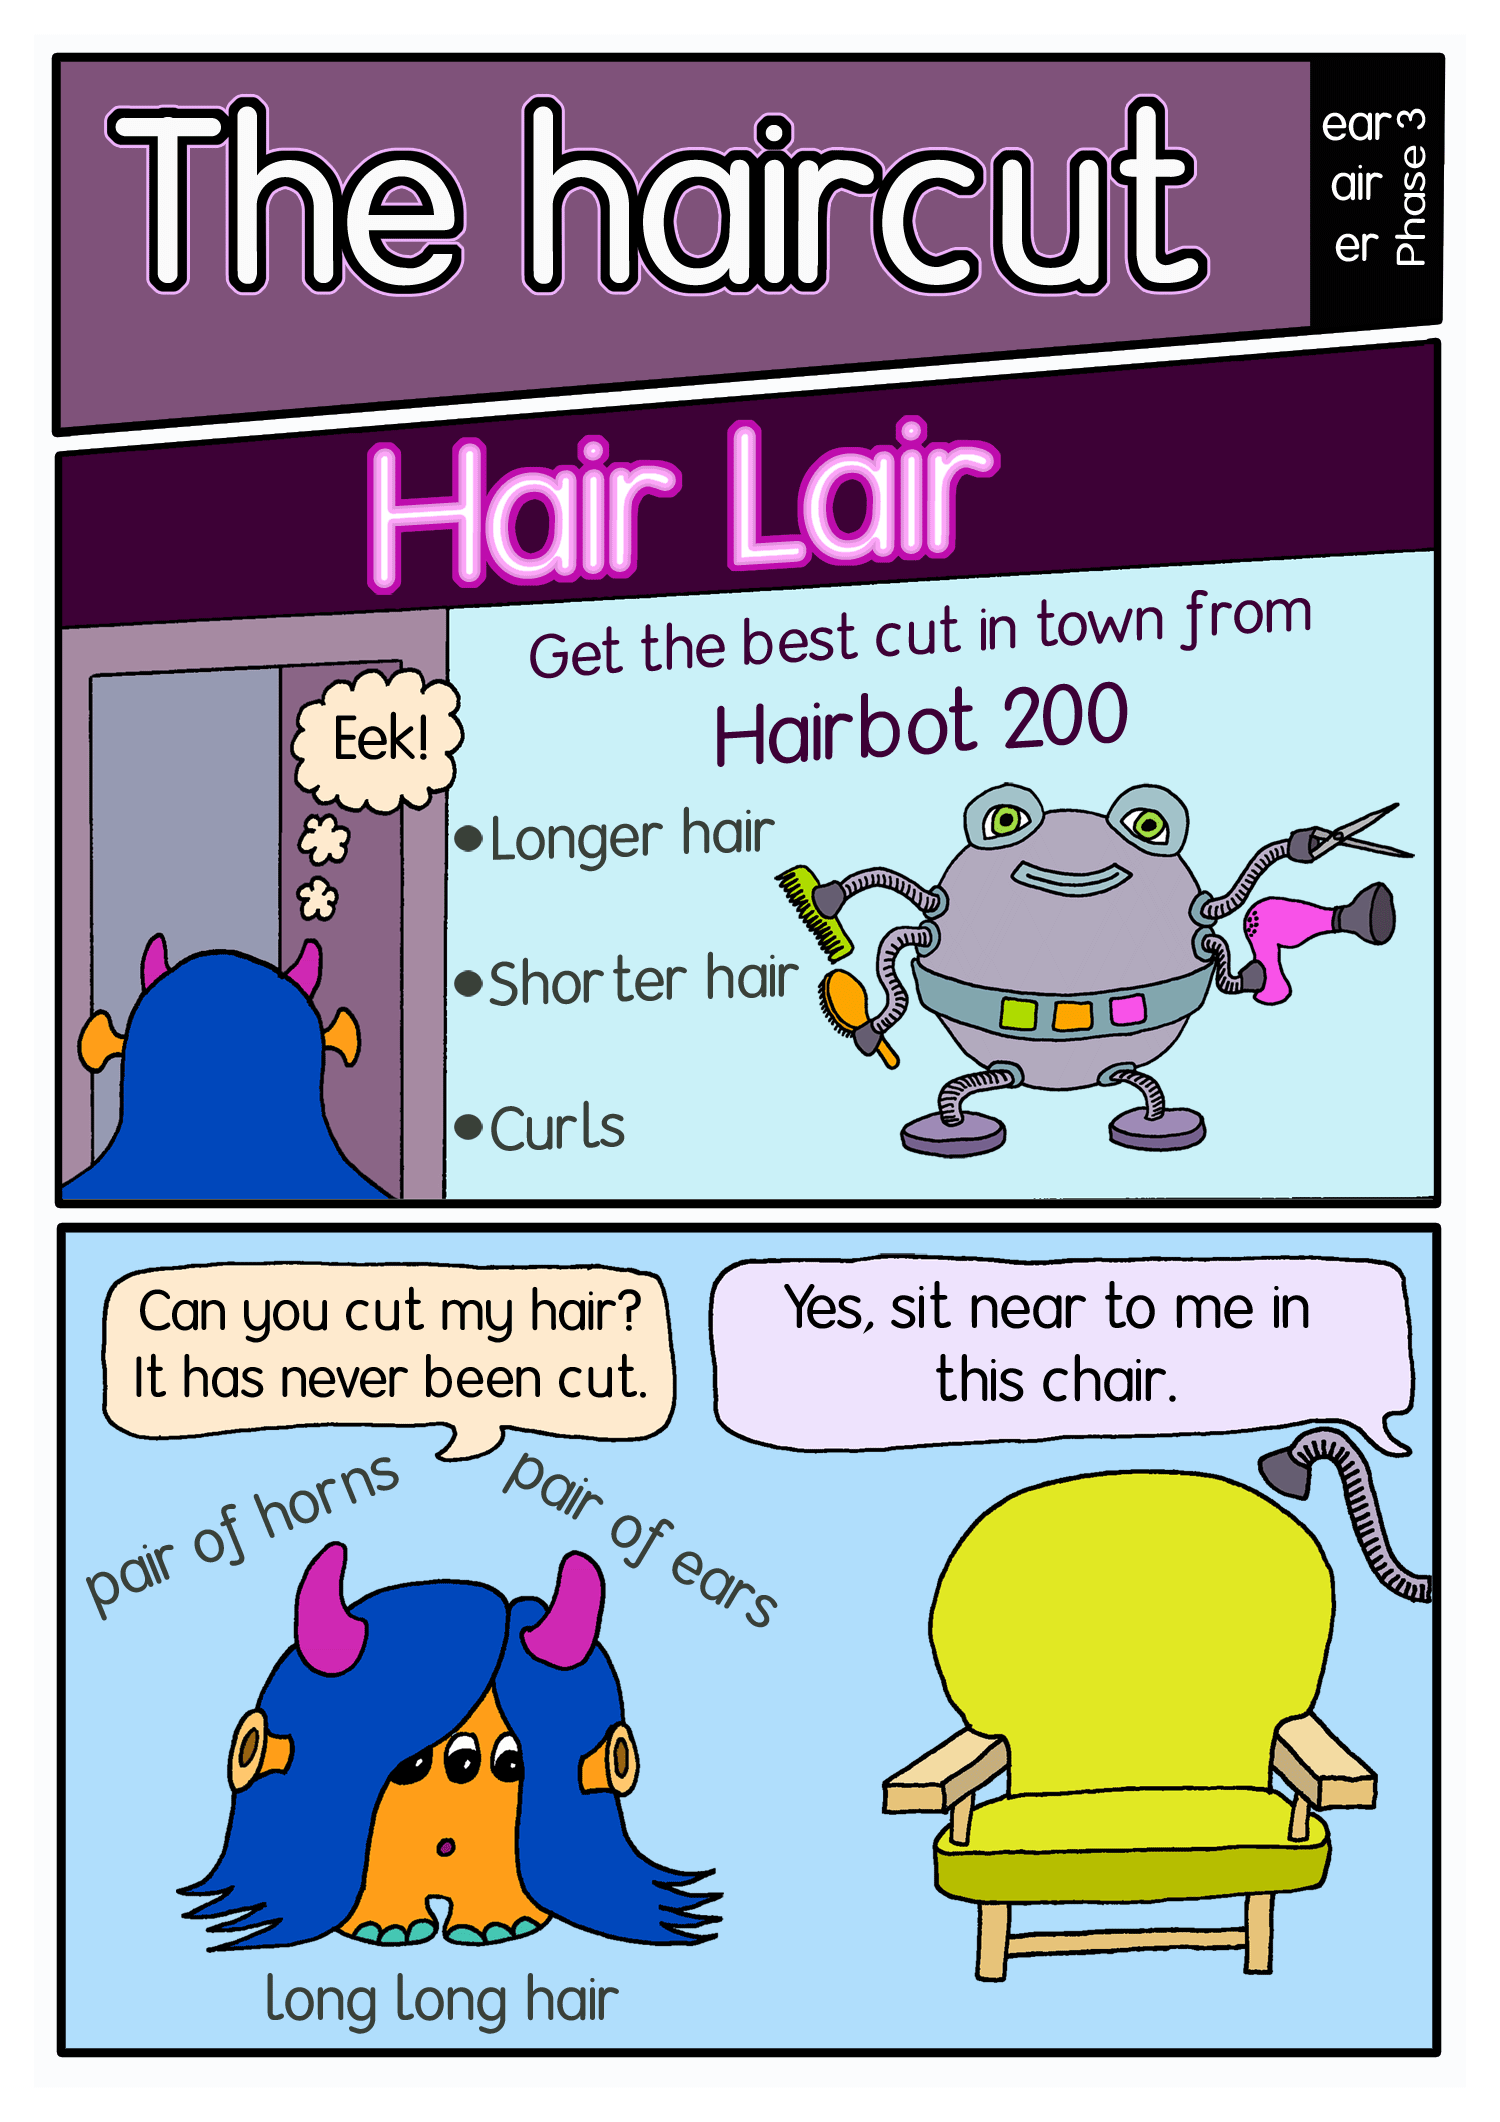 The haircut comic panel1